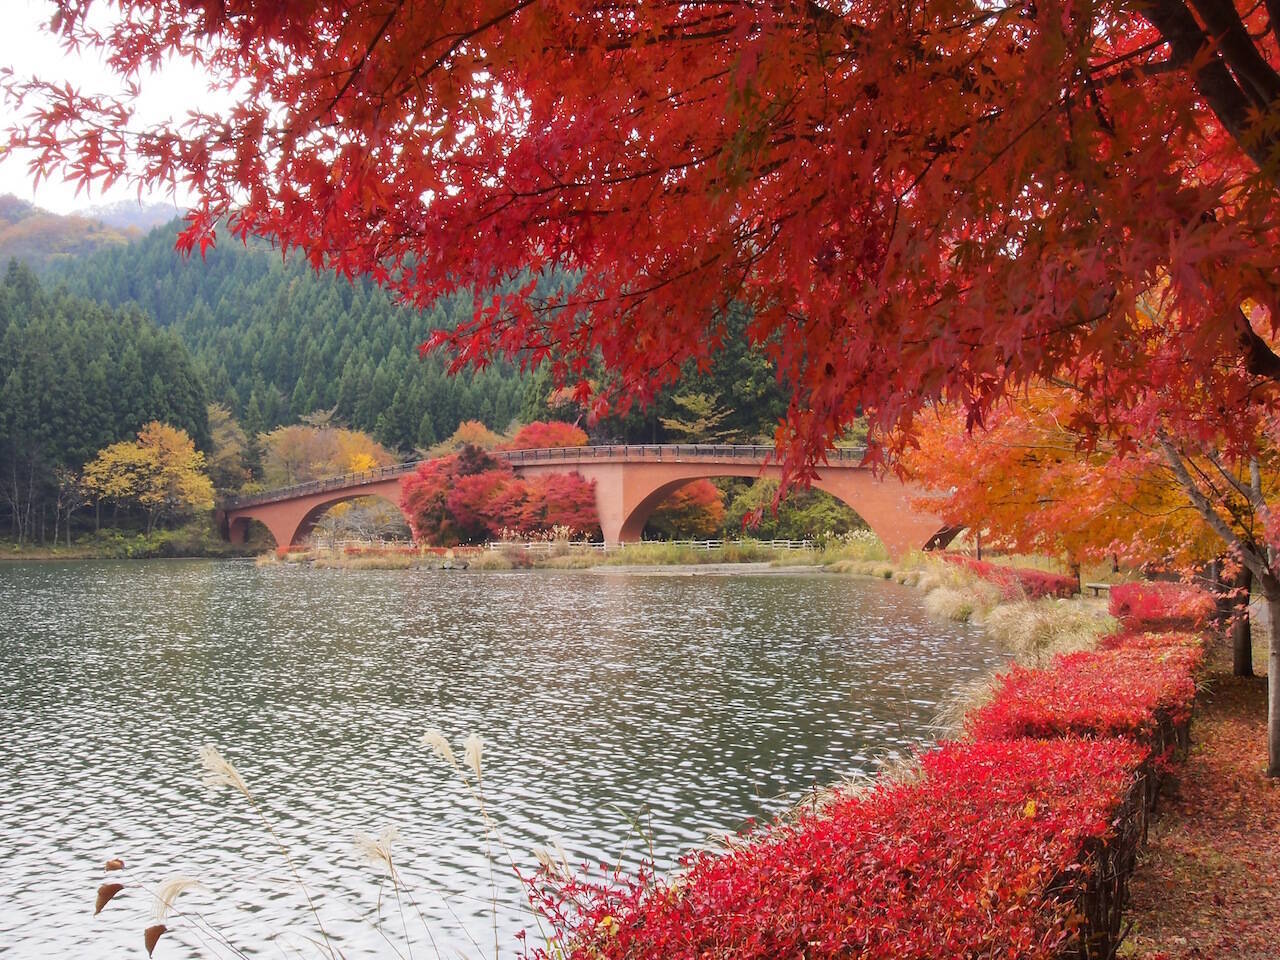 全国紅葉の絶景 秋色に染まる山々に憩う 群馬県の紅葉人気スポット 19年10月5日 エキサイトニュース